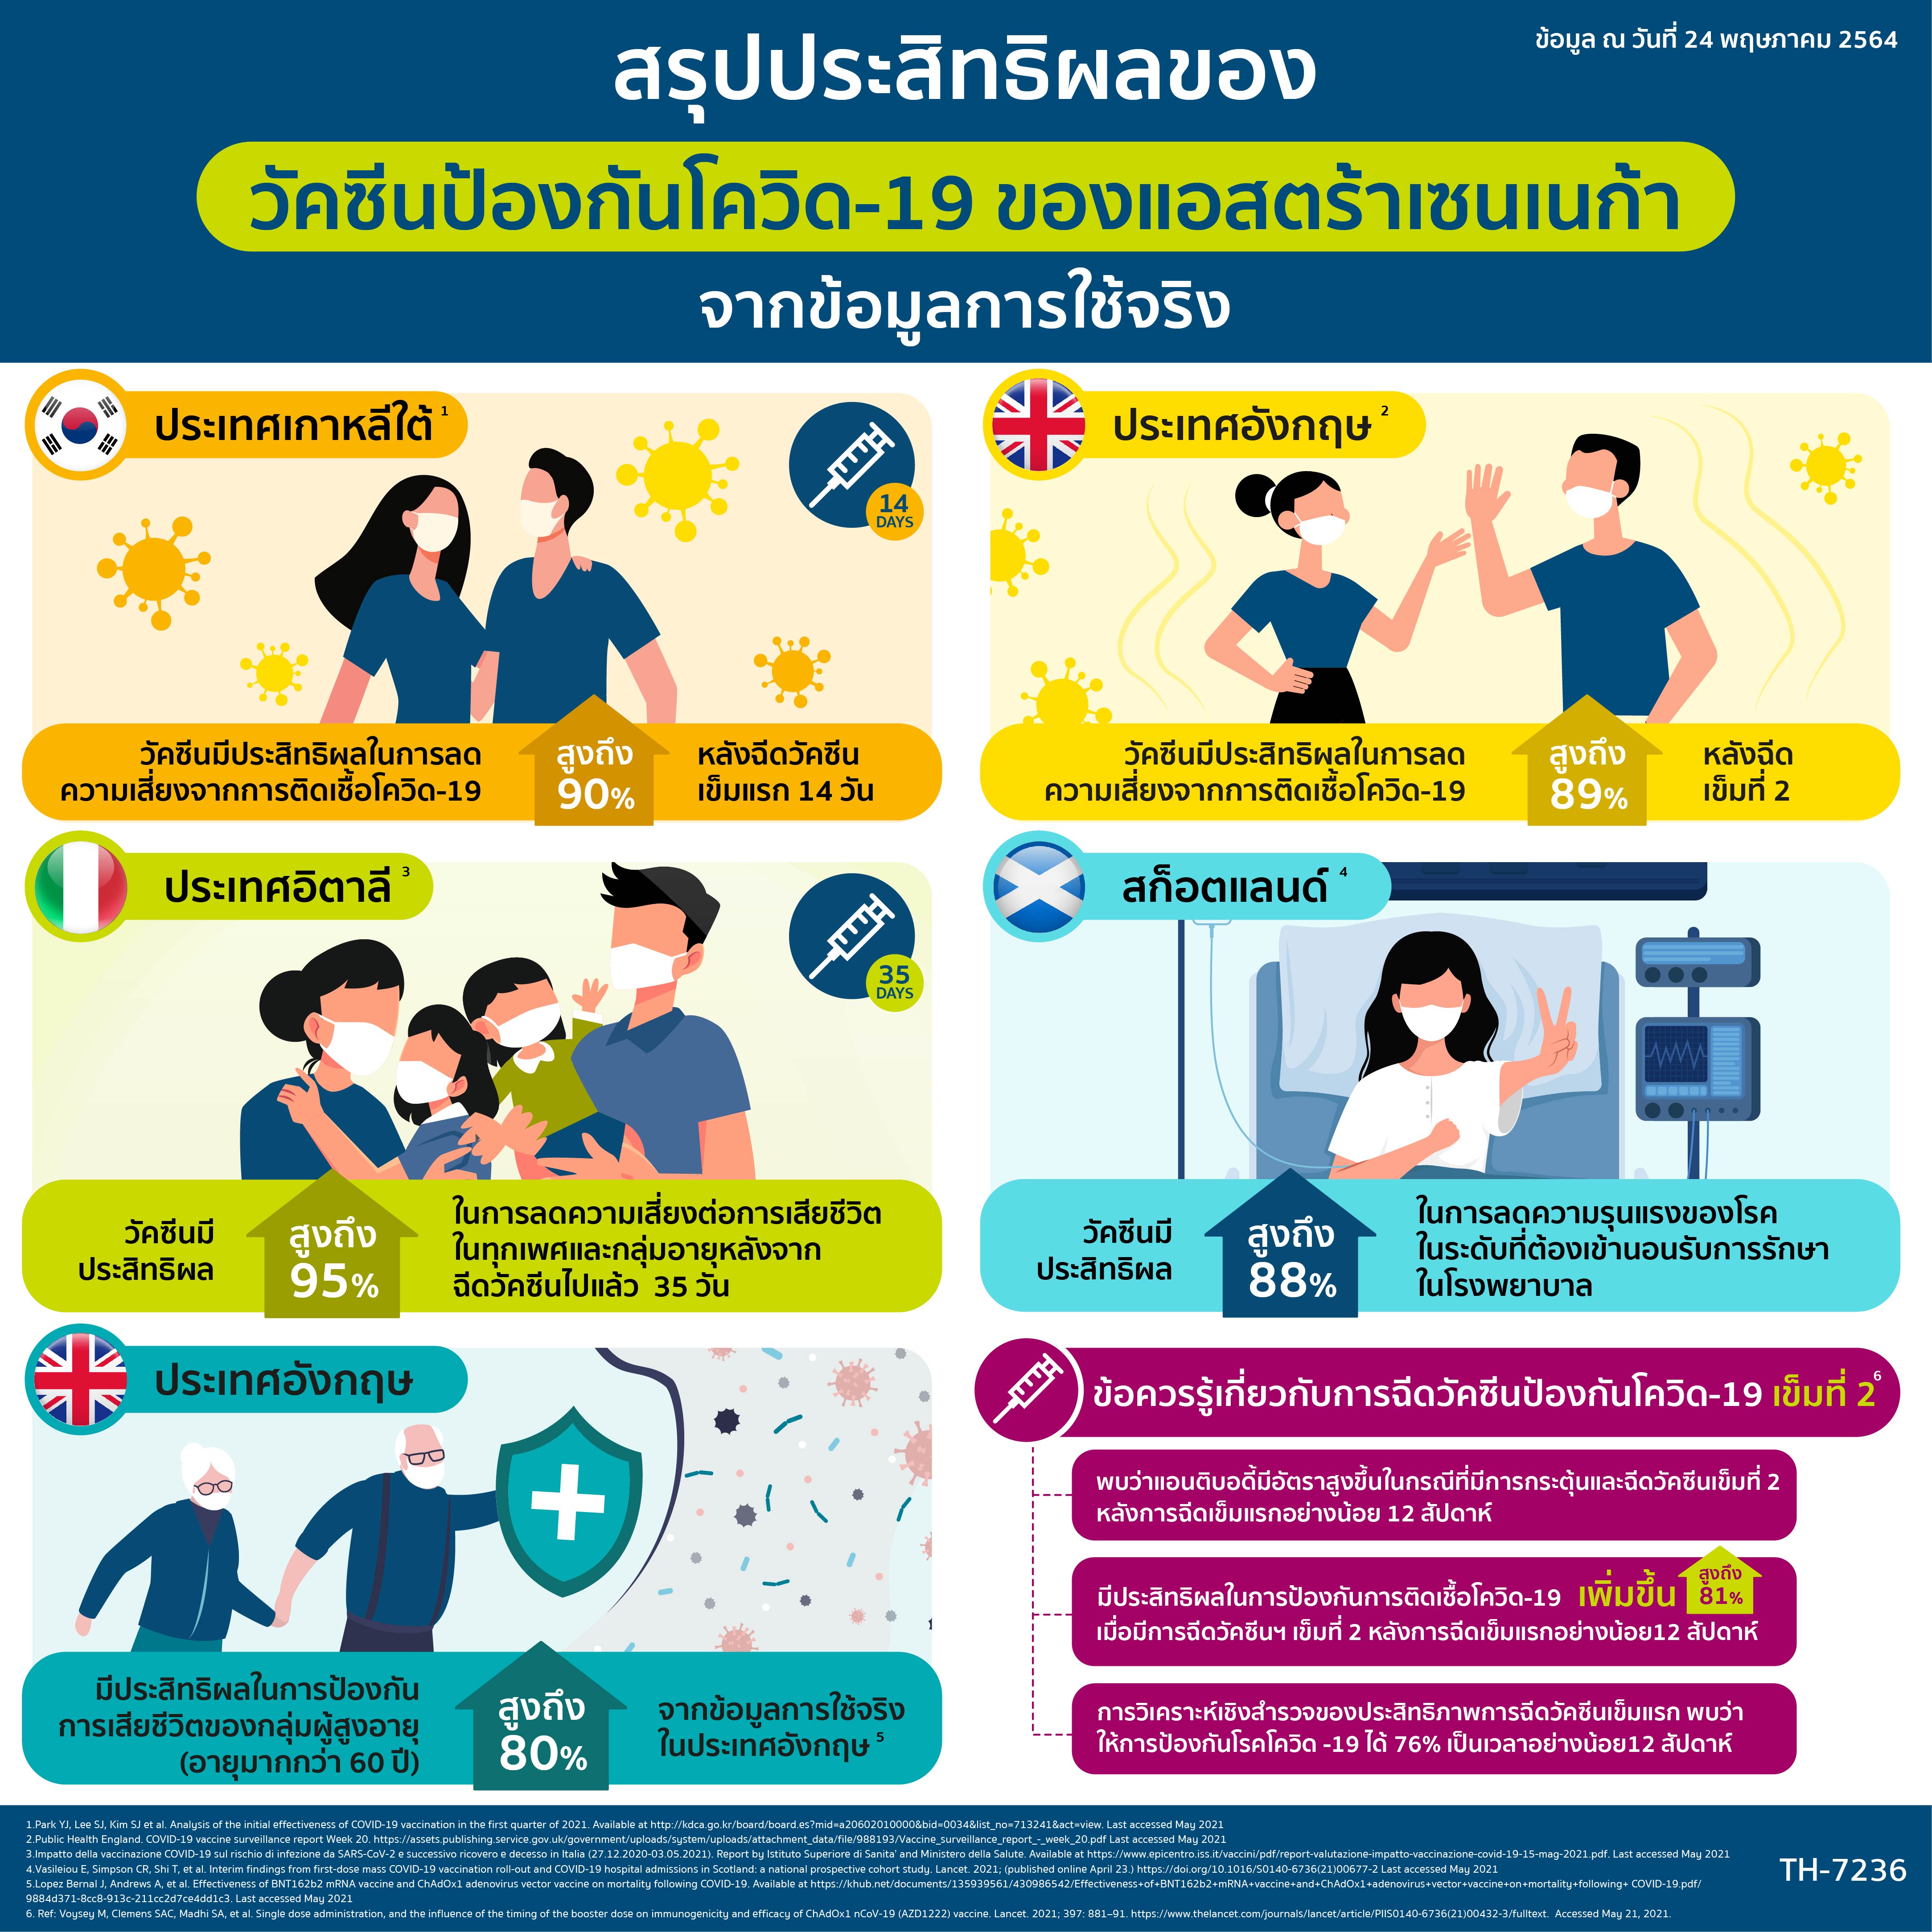 “เพราะเข้าใจจึงมั่นใจ” เหตุผลของคนไทยที่เลือกฉีดวัคซีนป้องกันโควิด-19